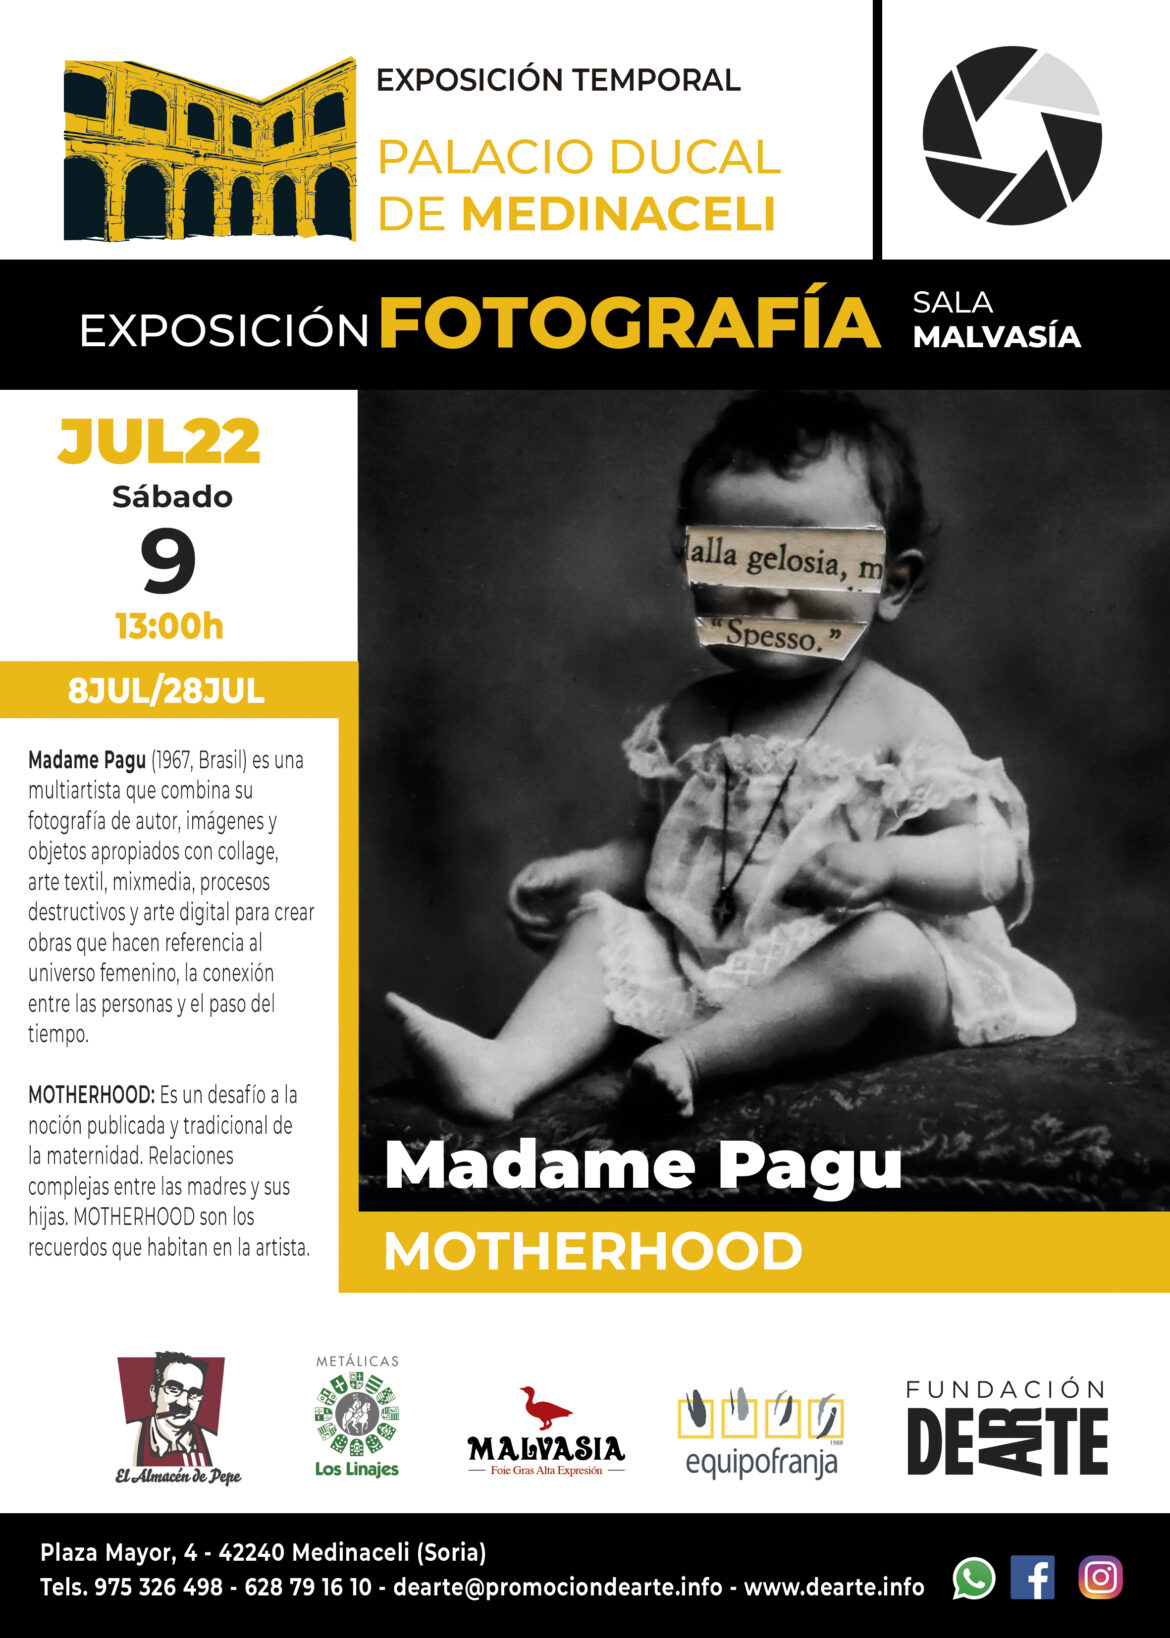 Exposición Temporal Madame Pagu “MOTHERHOOD”